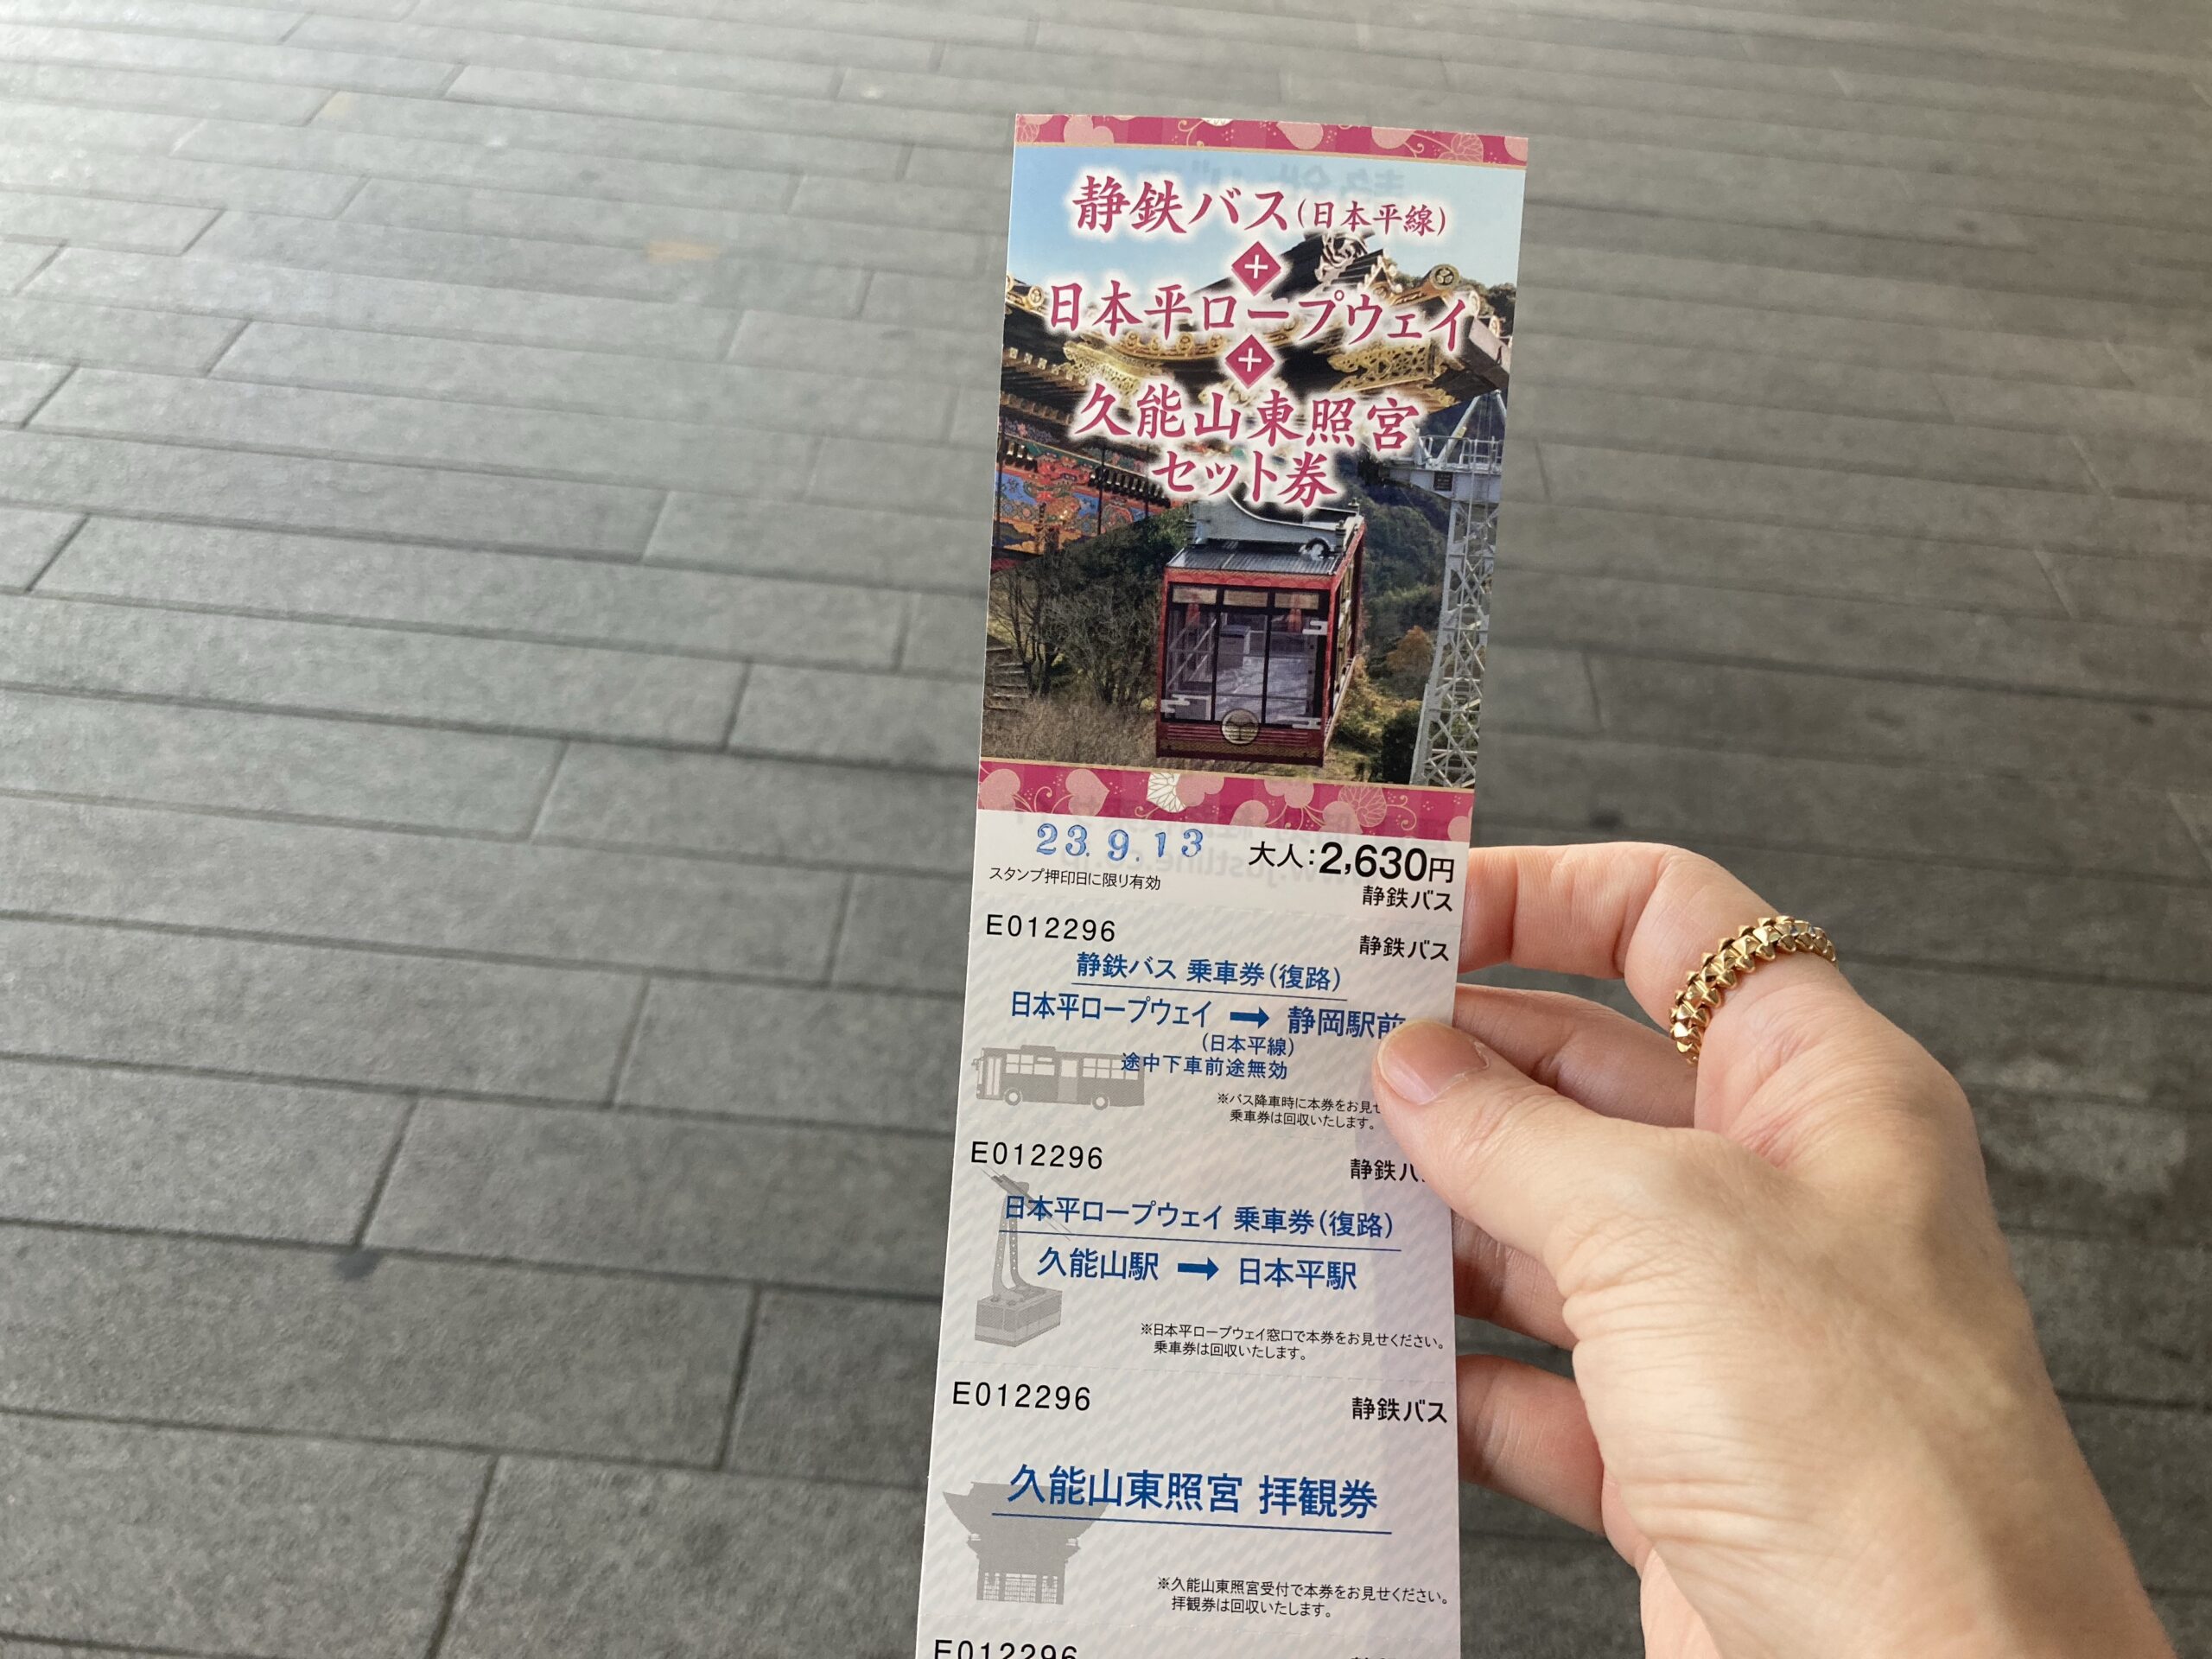 【名古屋から1泊旅行】路線バスで日本平ロープーウェイから久能山東照宮へ、静岡女ひとり旅